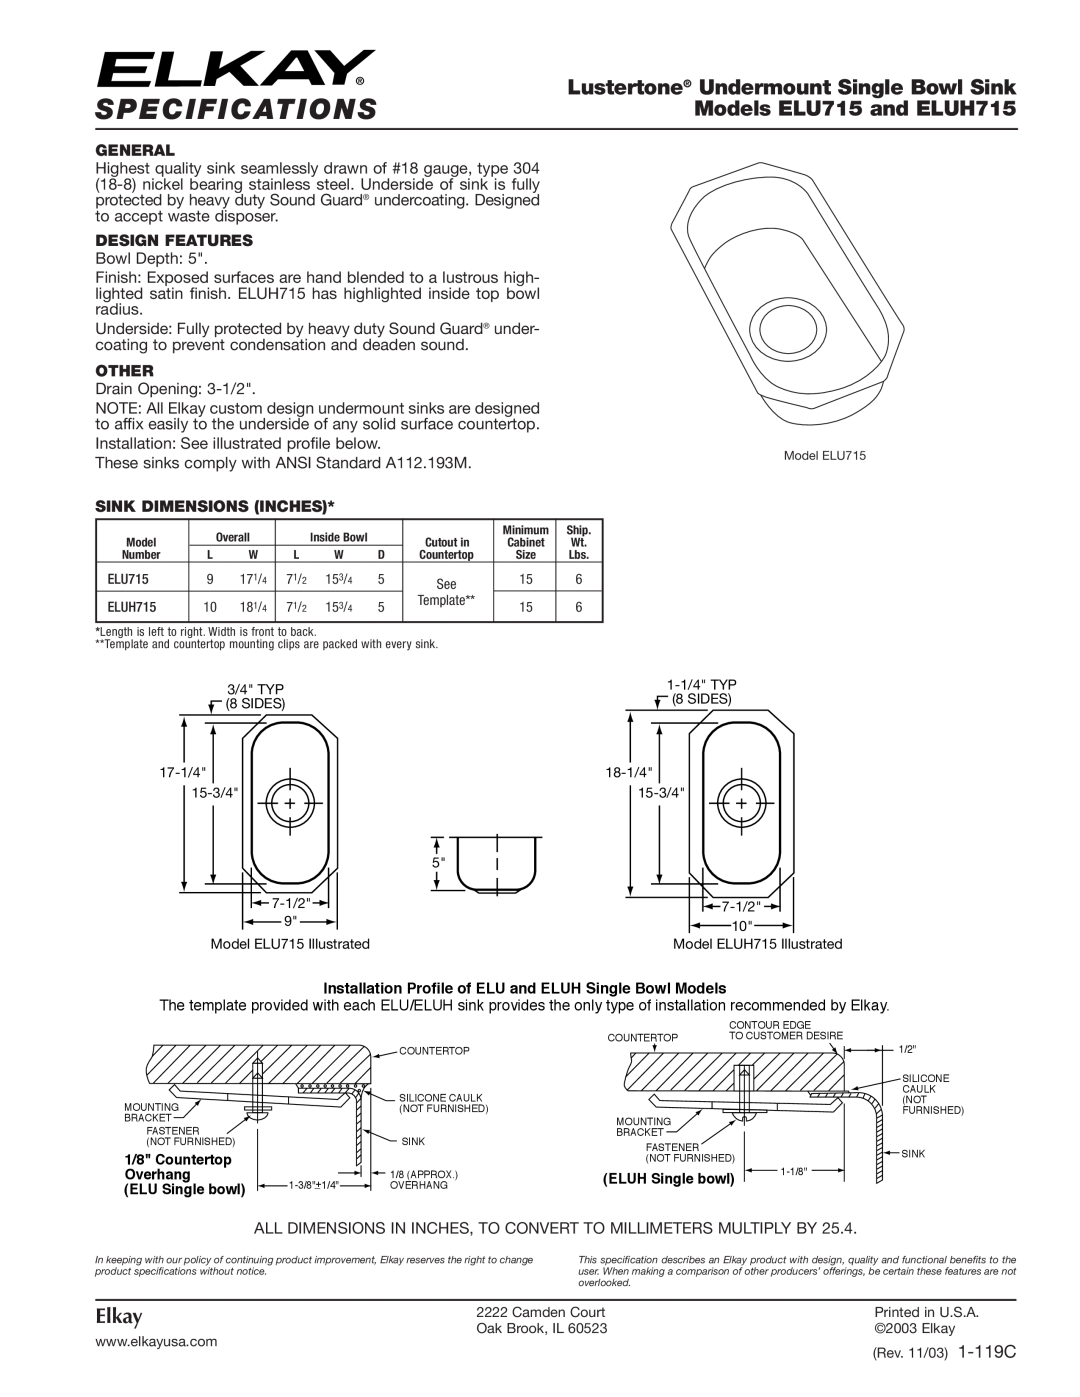 Elkay specifications Specifications, Lustertone Undermount Single Bowl Sink, Models ELU715 and ELUH715, Elkay, General 